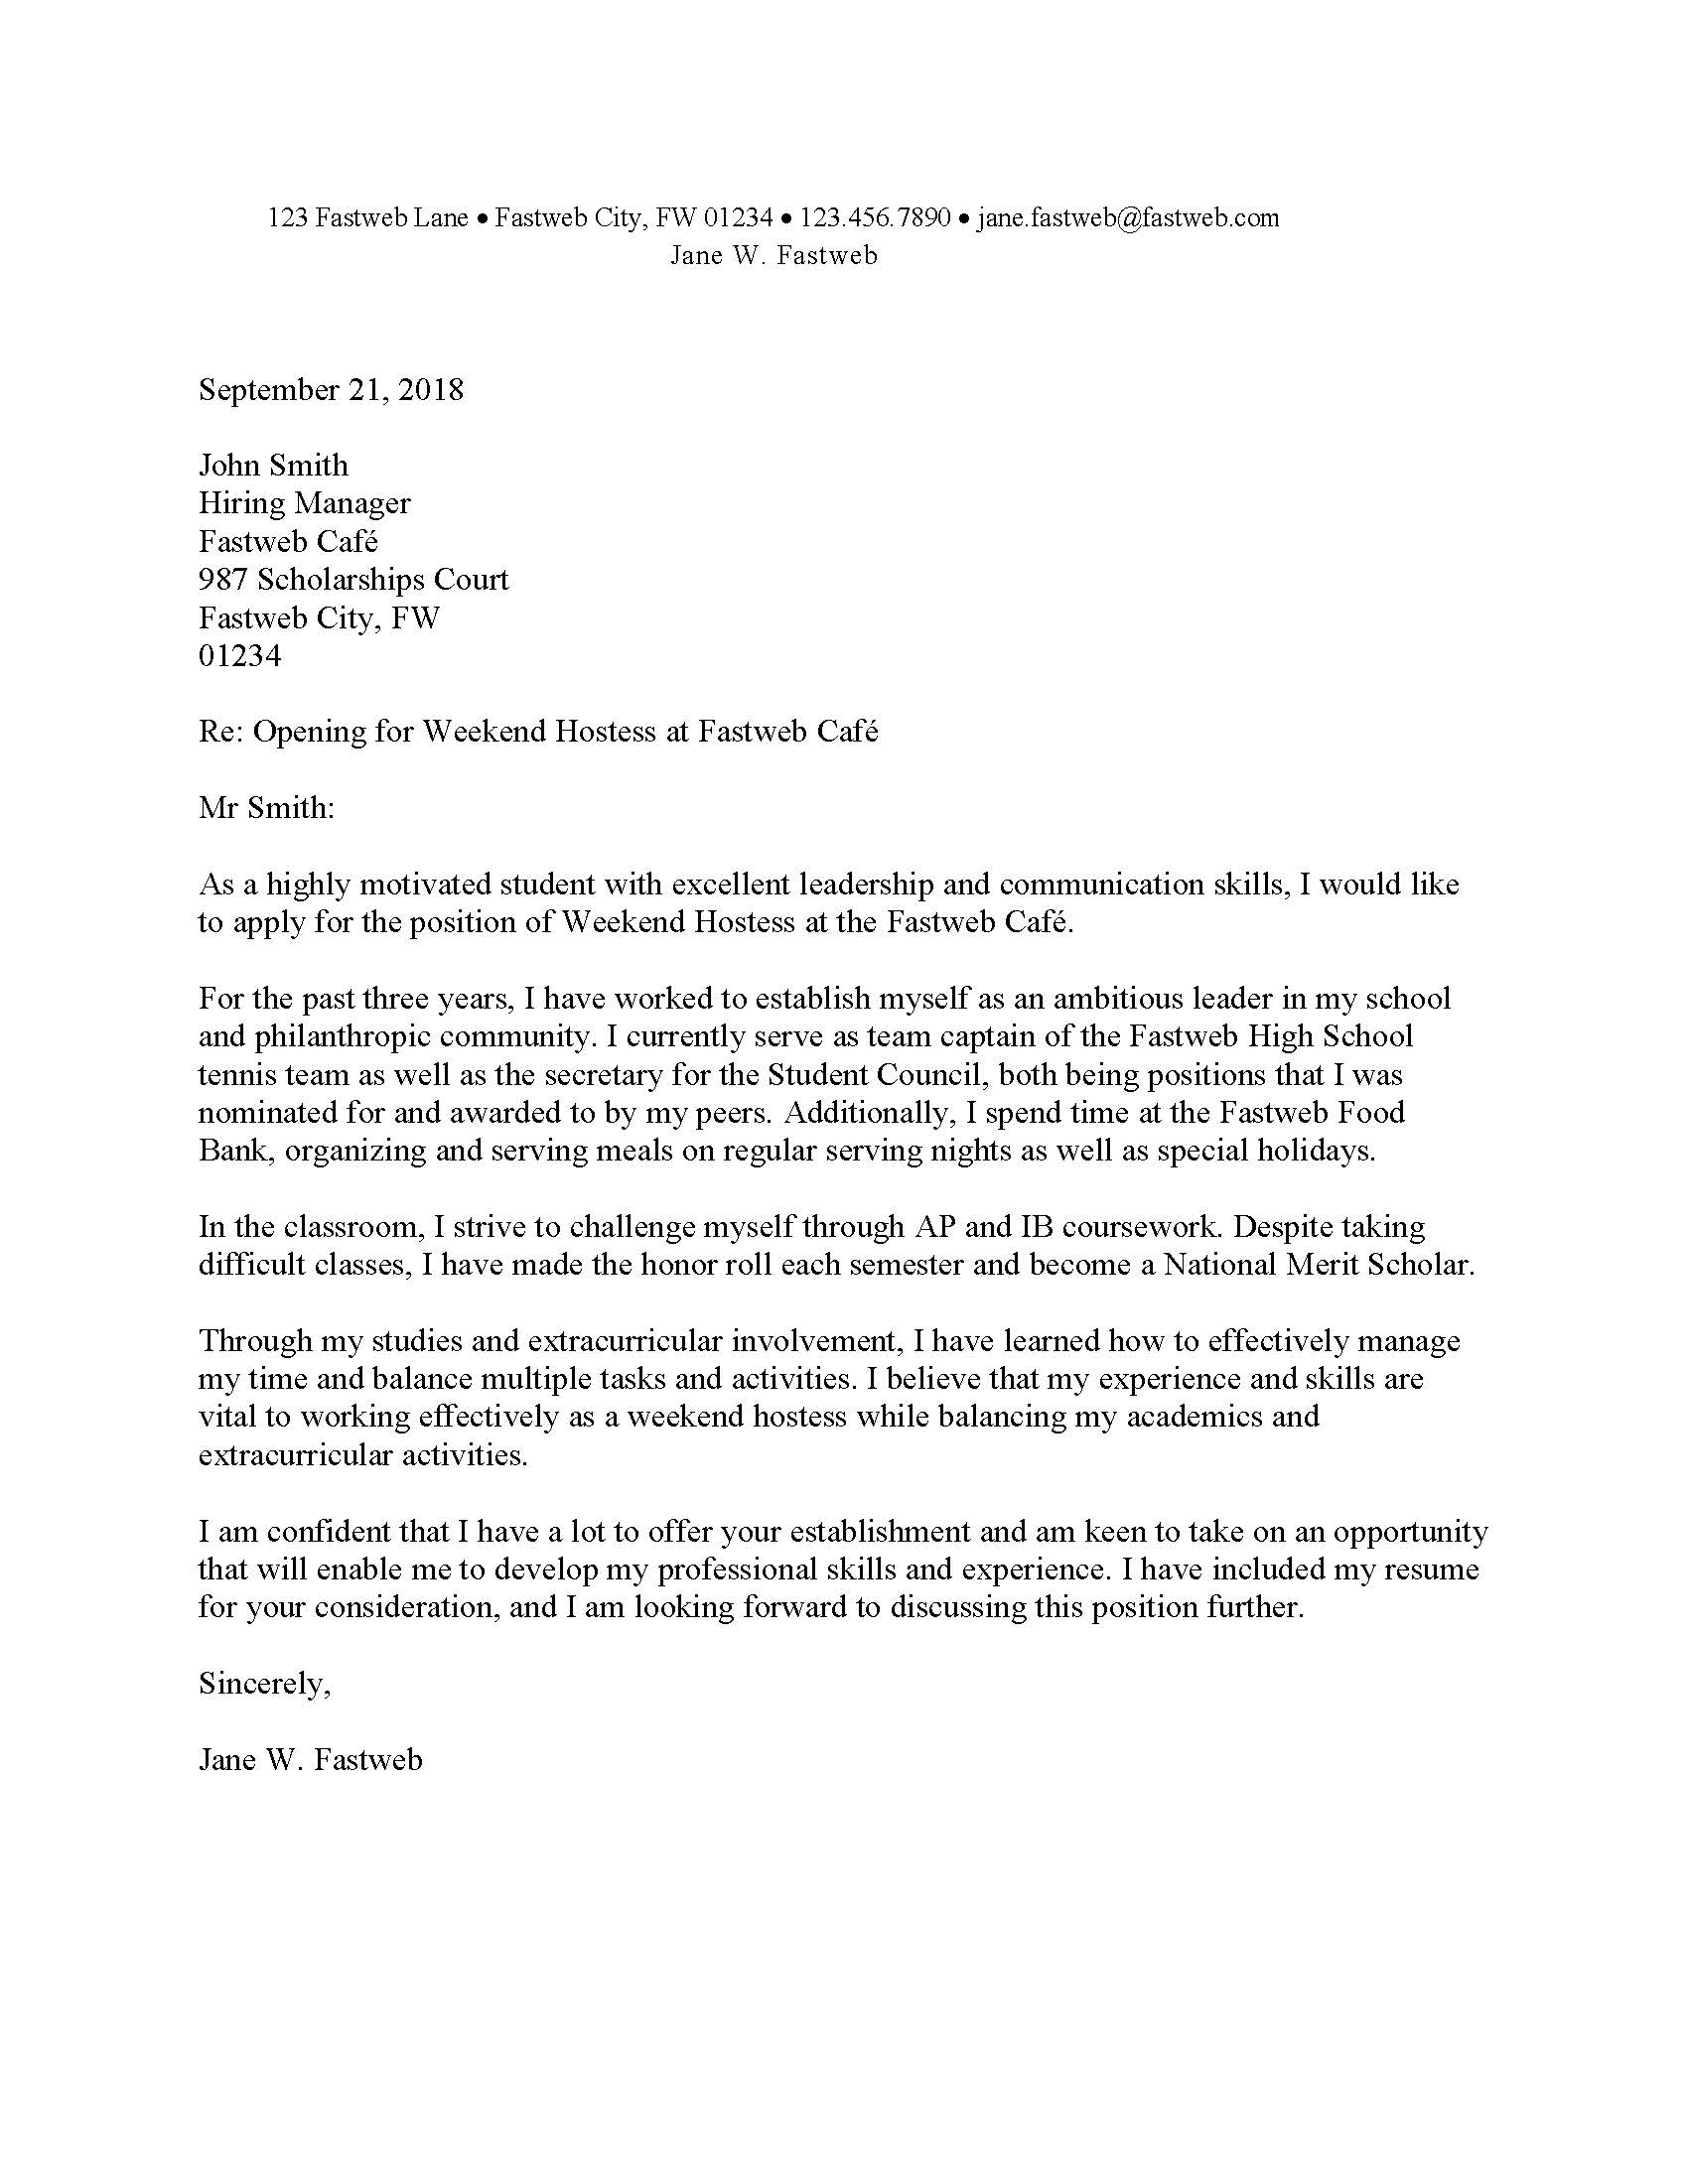 Cover Letter For Pr Job Sample Cover Letter